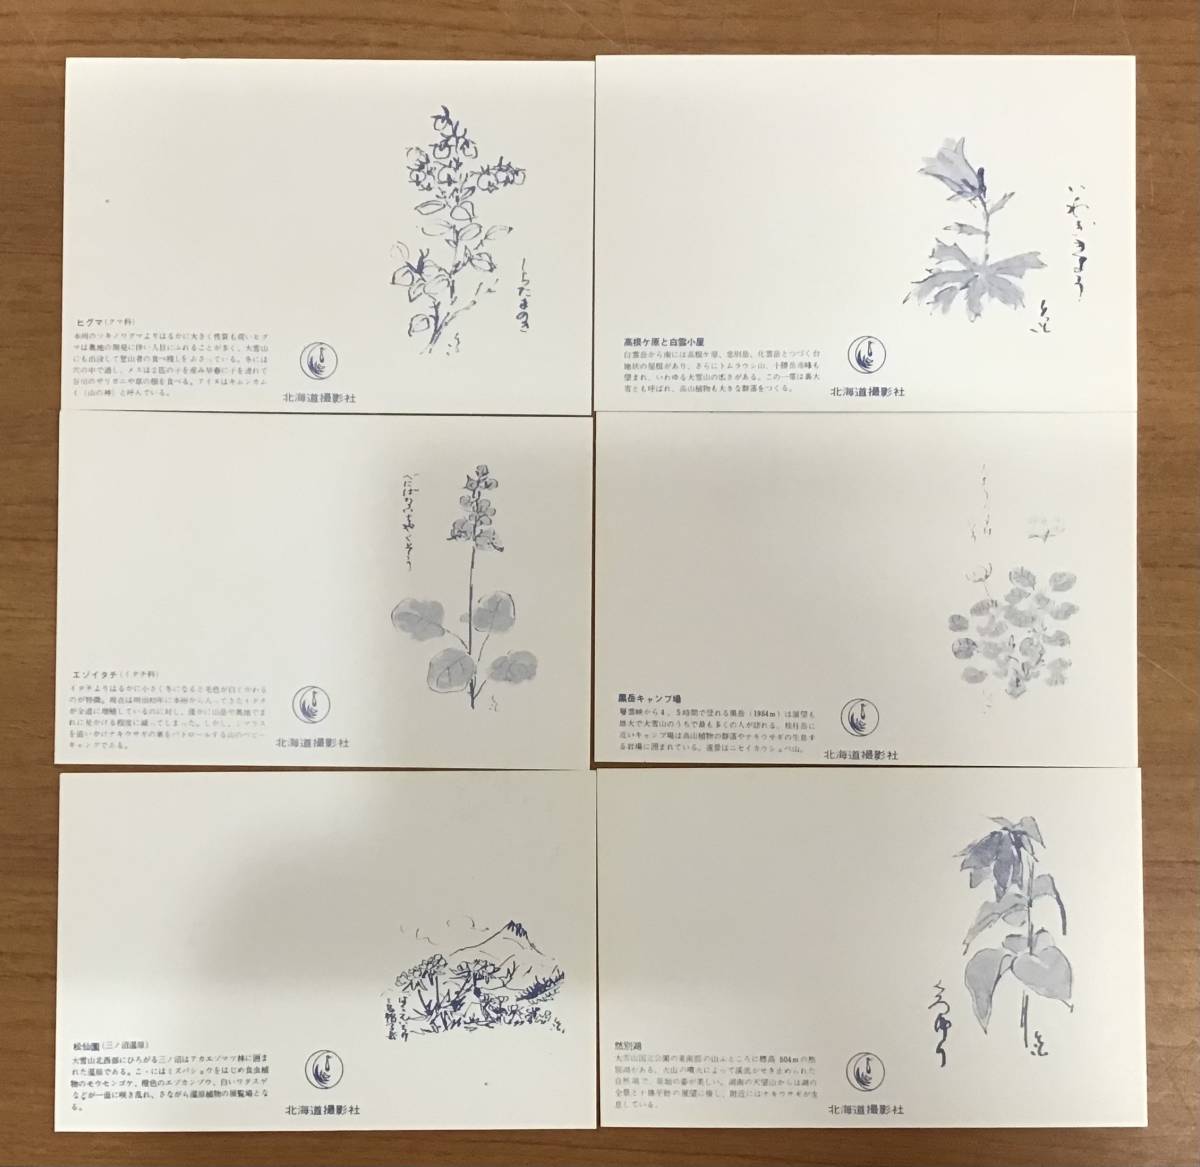  большой снежные горы . перемещение растения Mini открытка открытка с видом 20 листов ввод природа пейзаж животное растения цветок открытка 